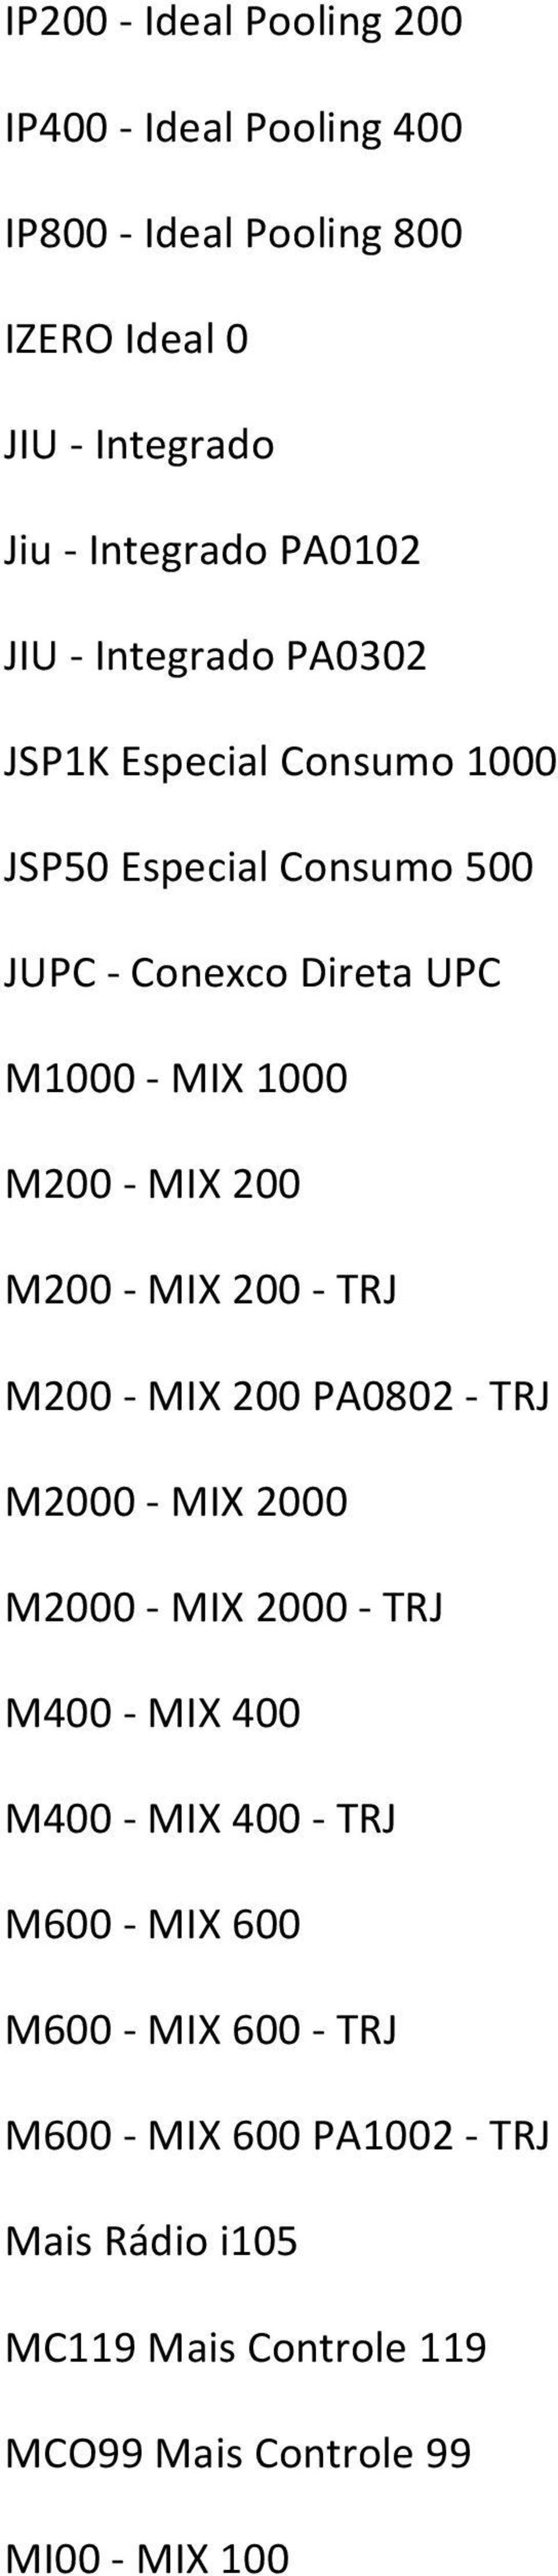 MIX 200 M200 MIX 200 TRJ M200 MIX 200 PA0802 TRJ M2000 MIX 2000 M2000 MIX 2000 TRJ M400 MIX 400 M400 MIX 400 TRJ M600